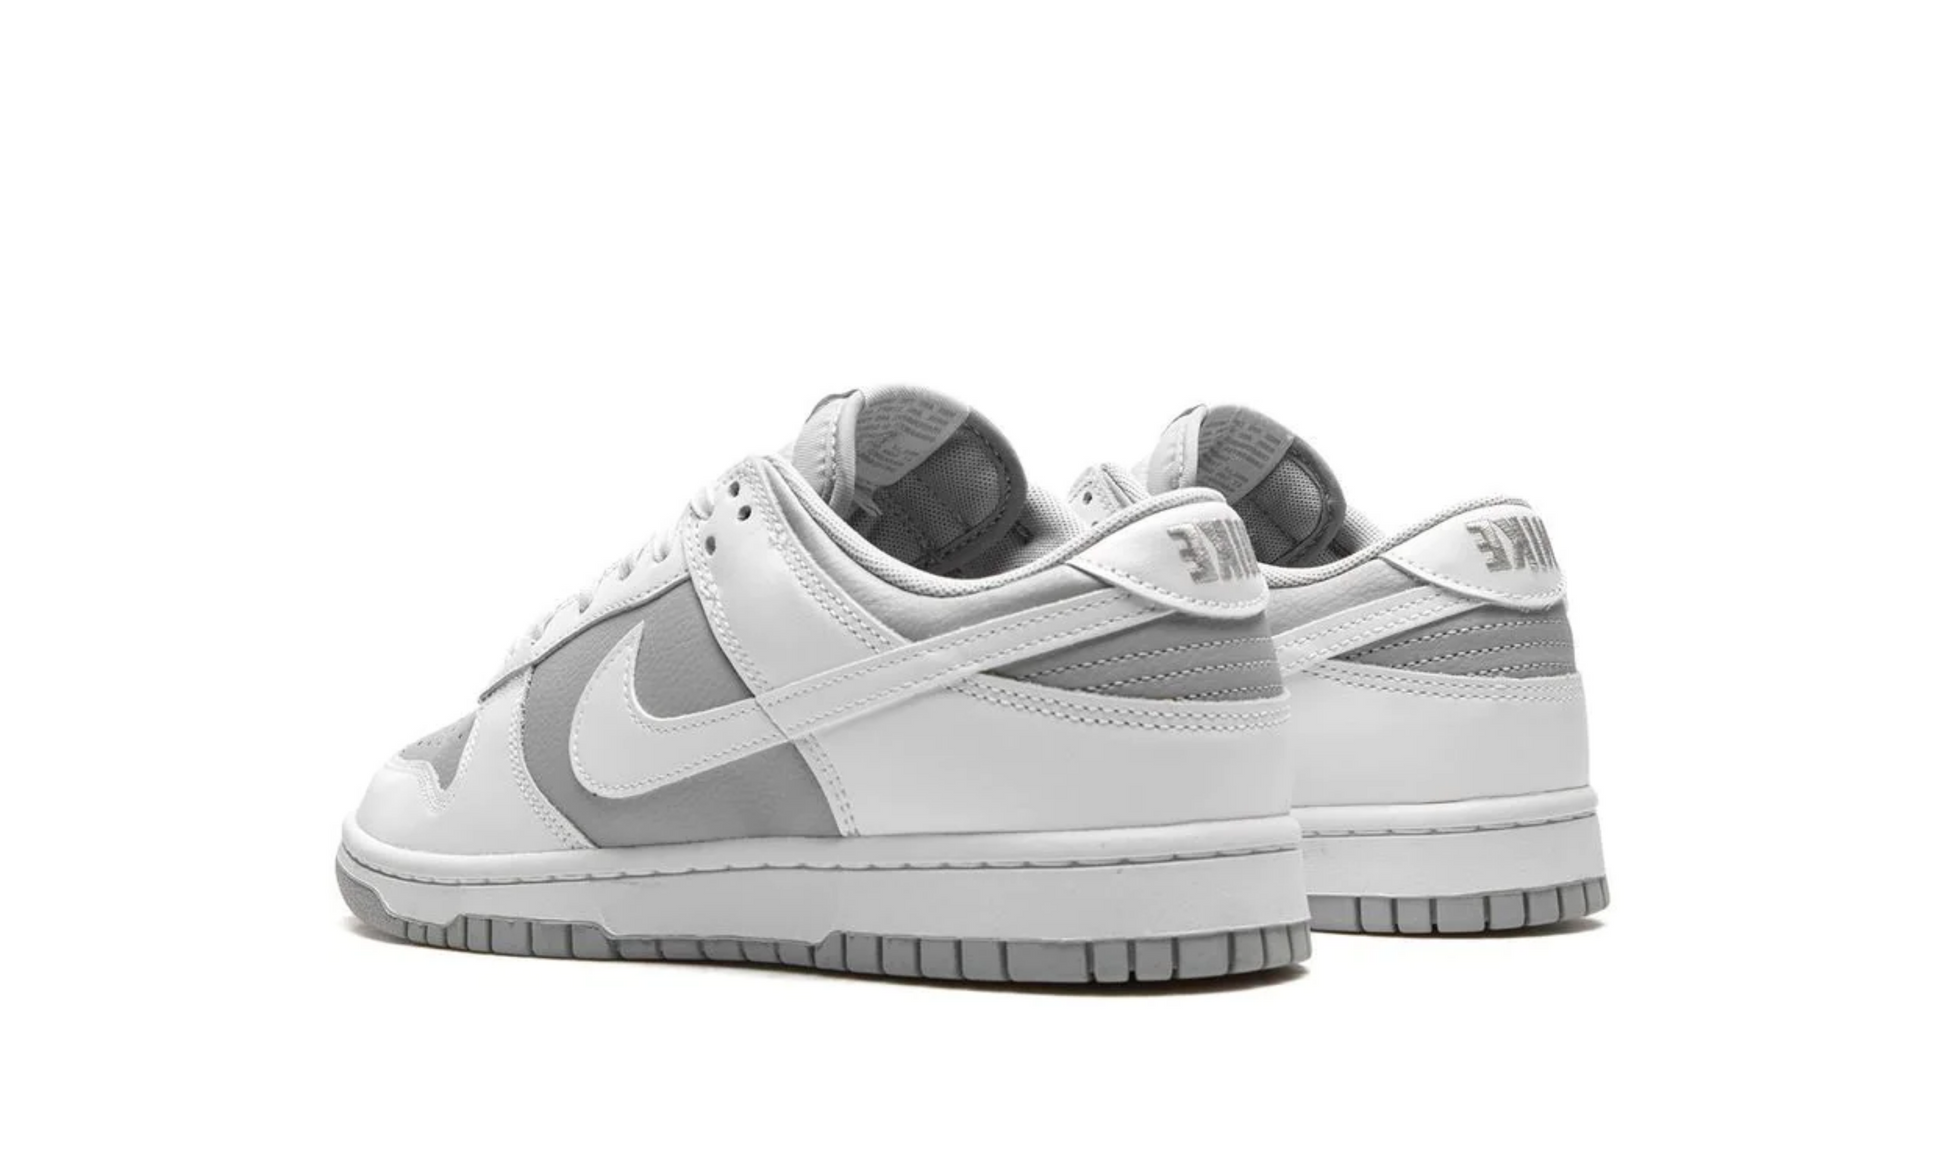 Nike Dunk Low Retro White Grey – Spicysneakers